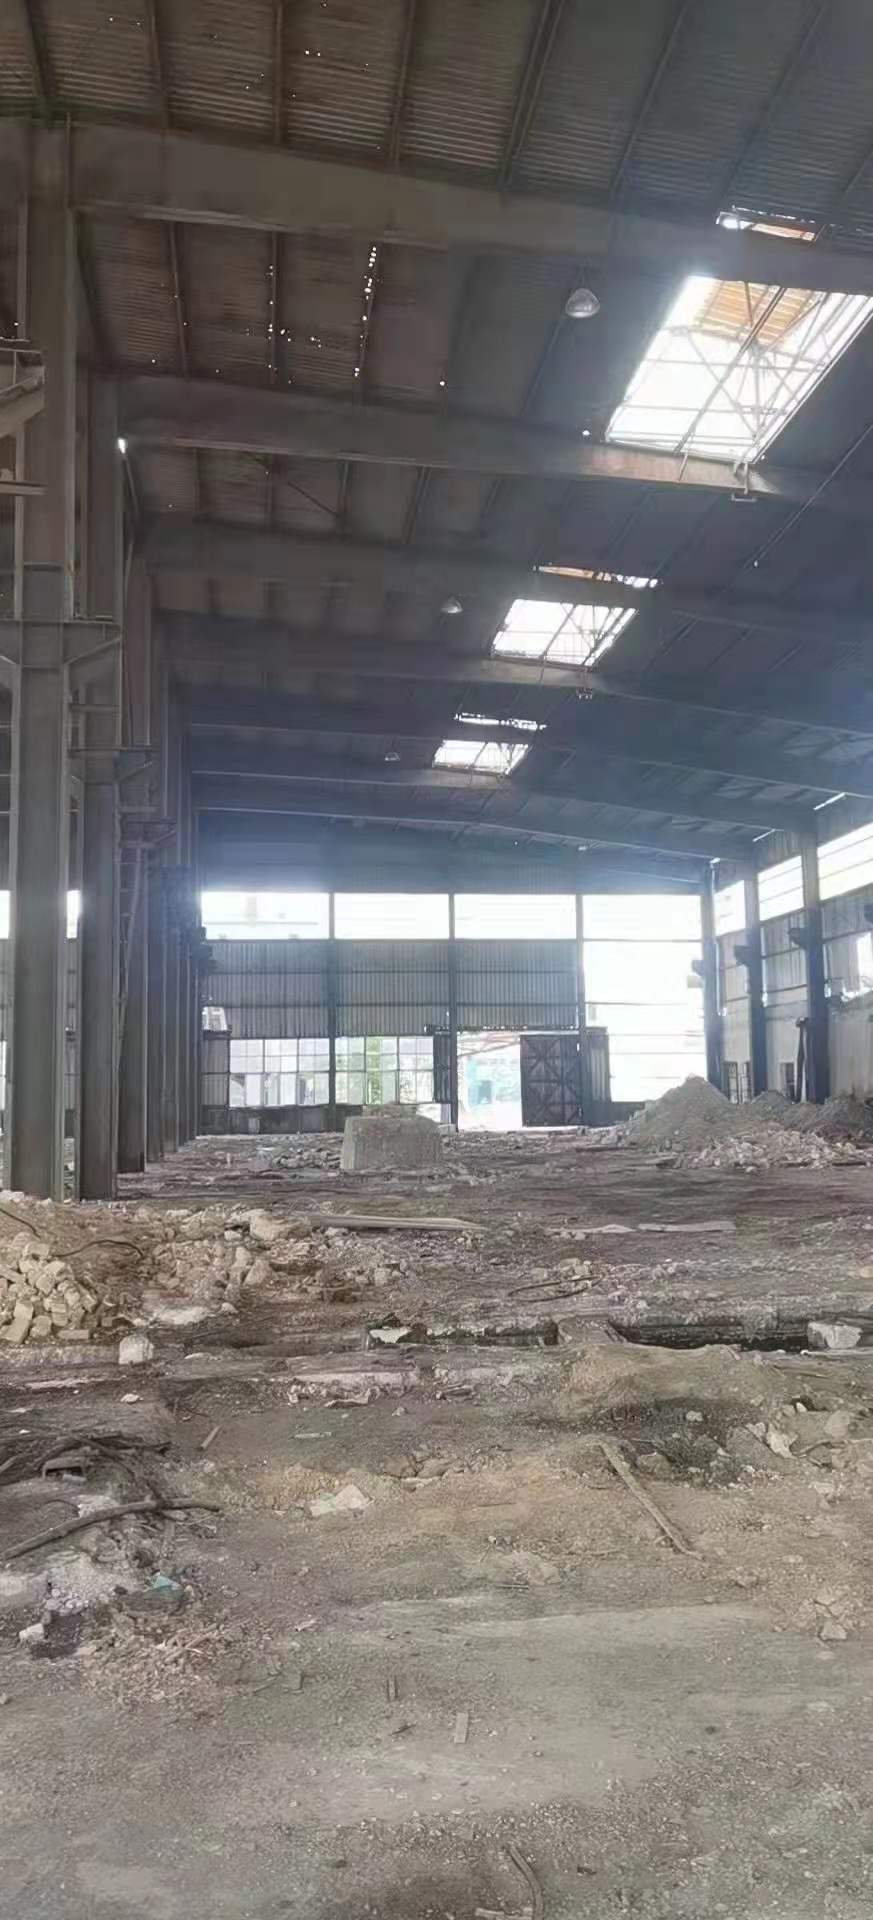 深圳市防风雨棚铁棚瓦面漏水铁棚安装维修施工公司